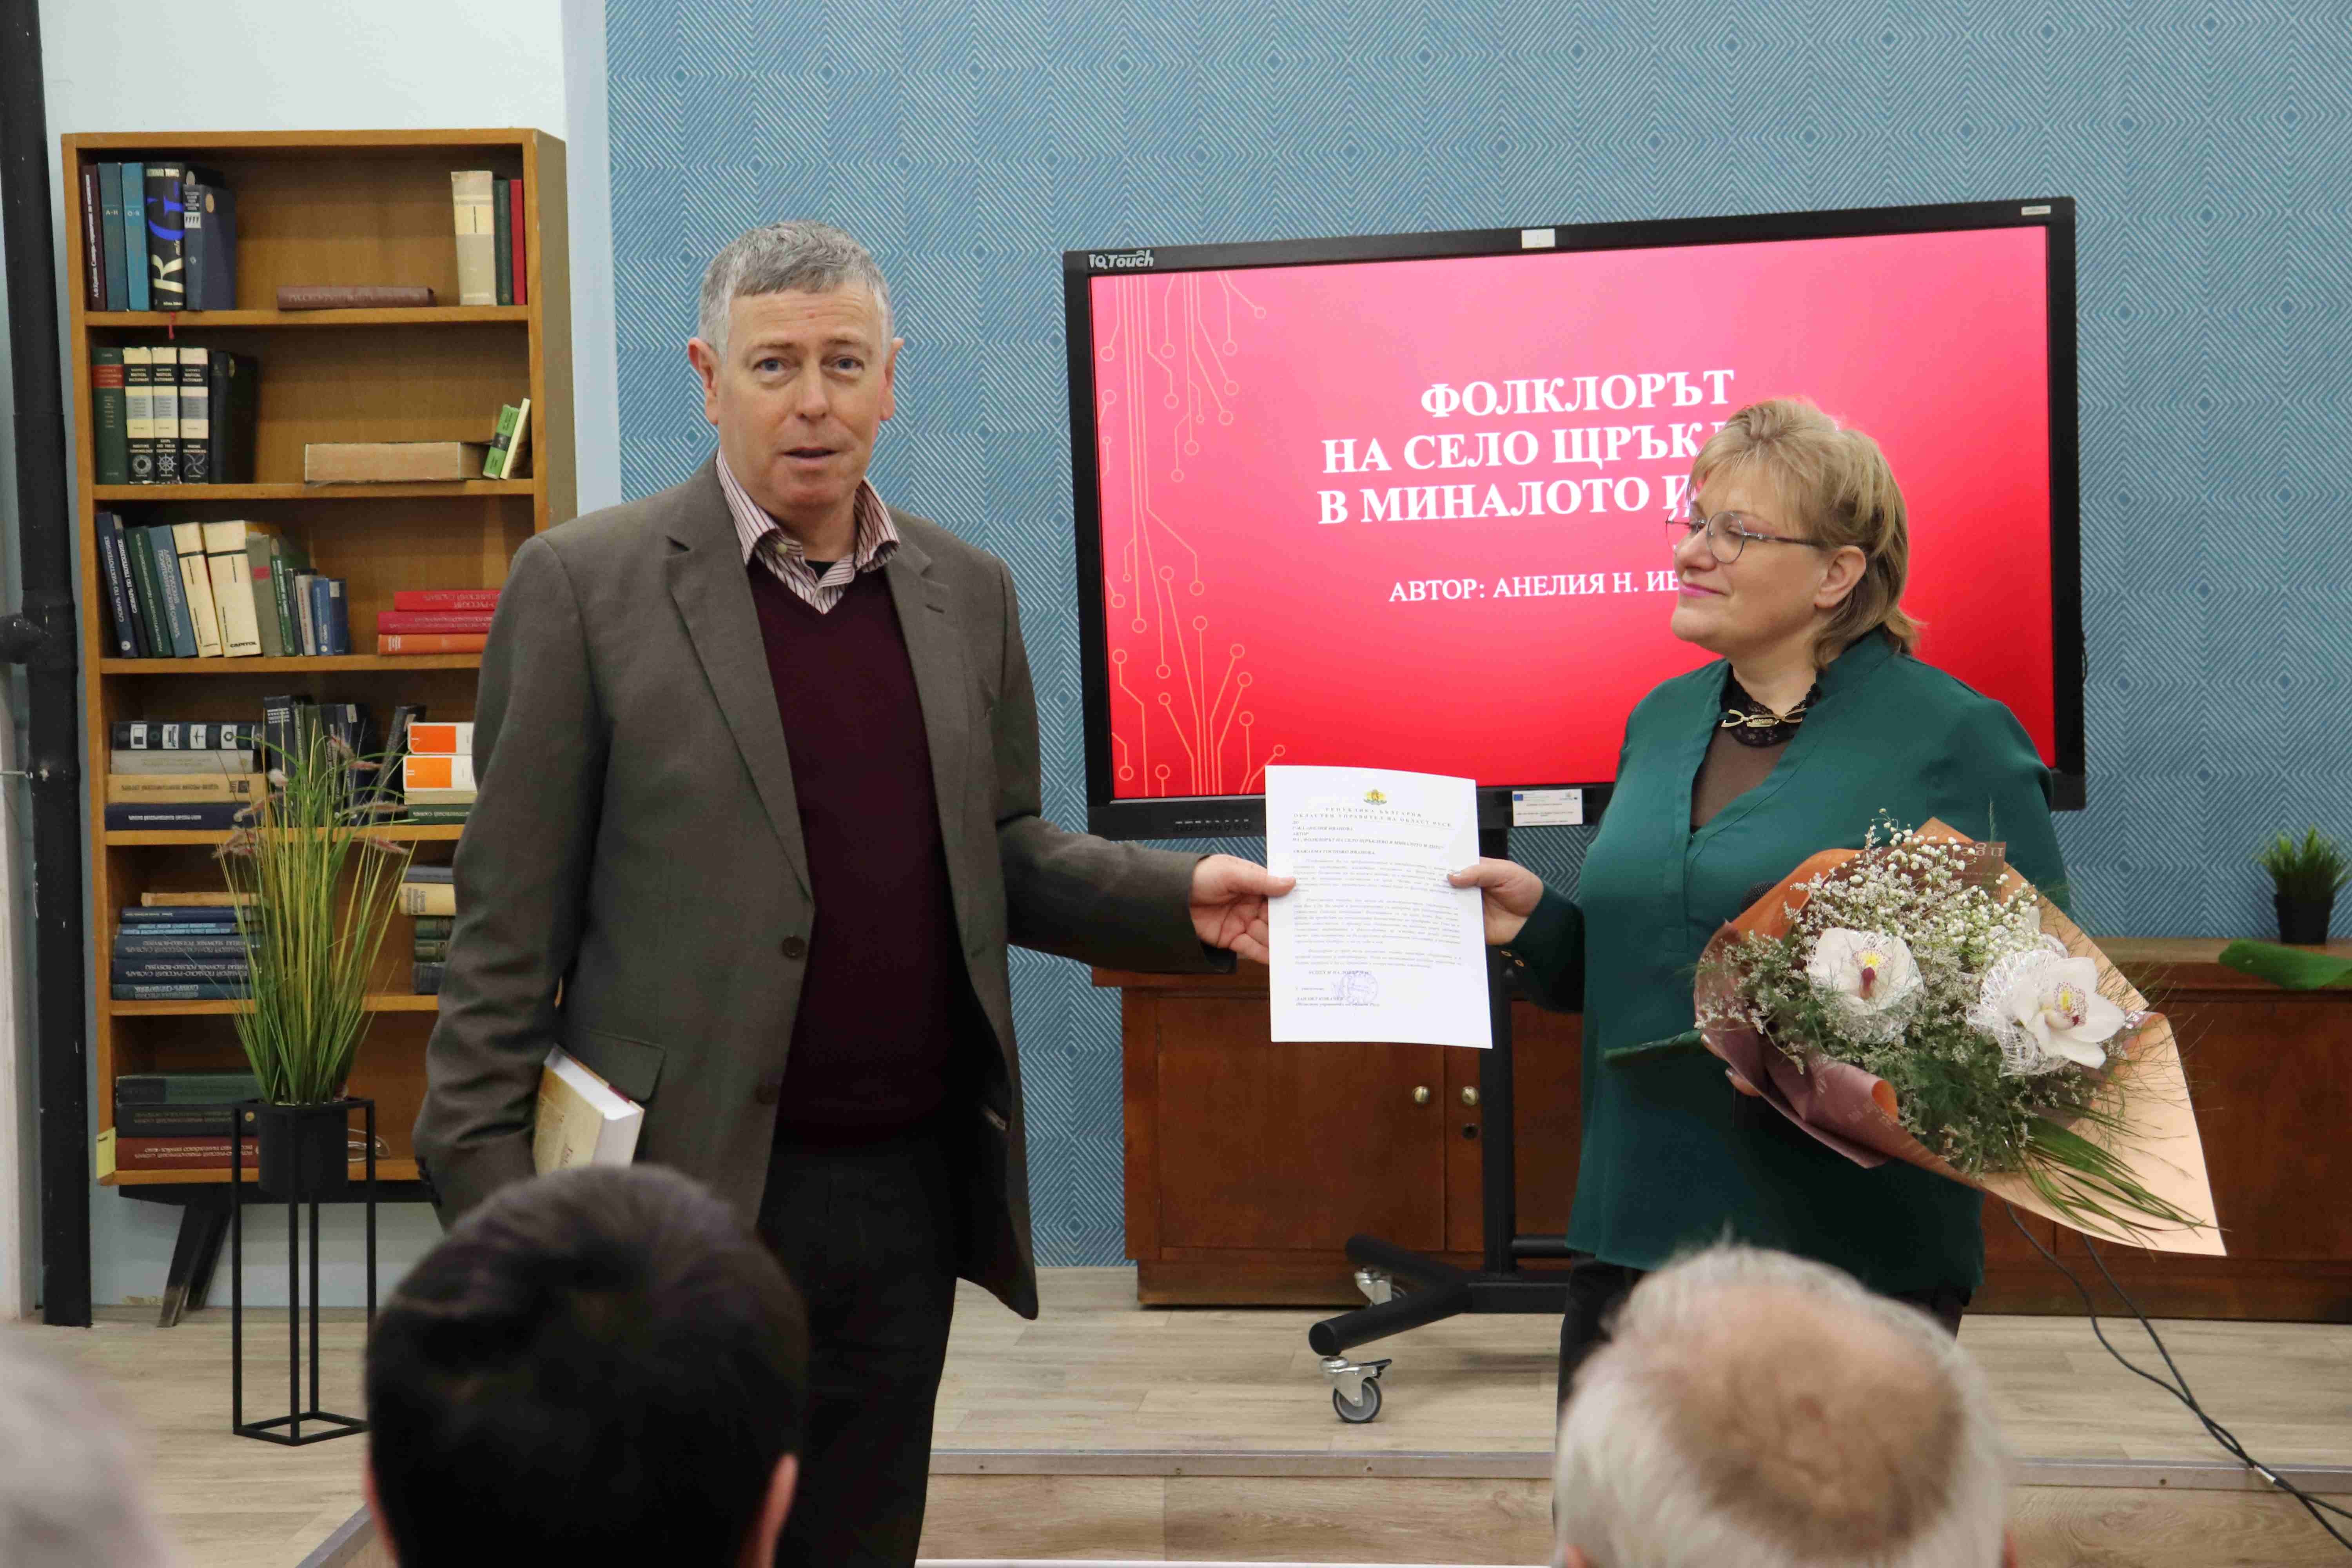 Анелия Иванова представи книгата си, посветена на  фолклора на село Щръклево